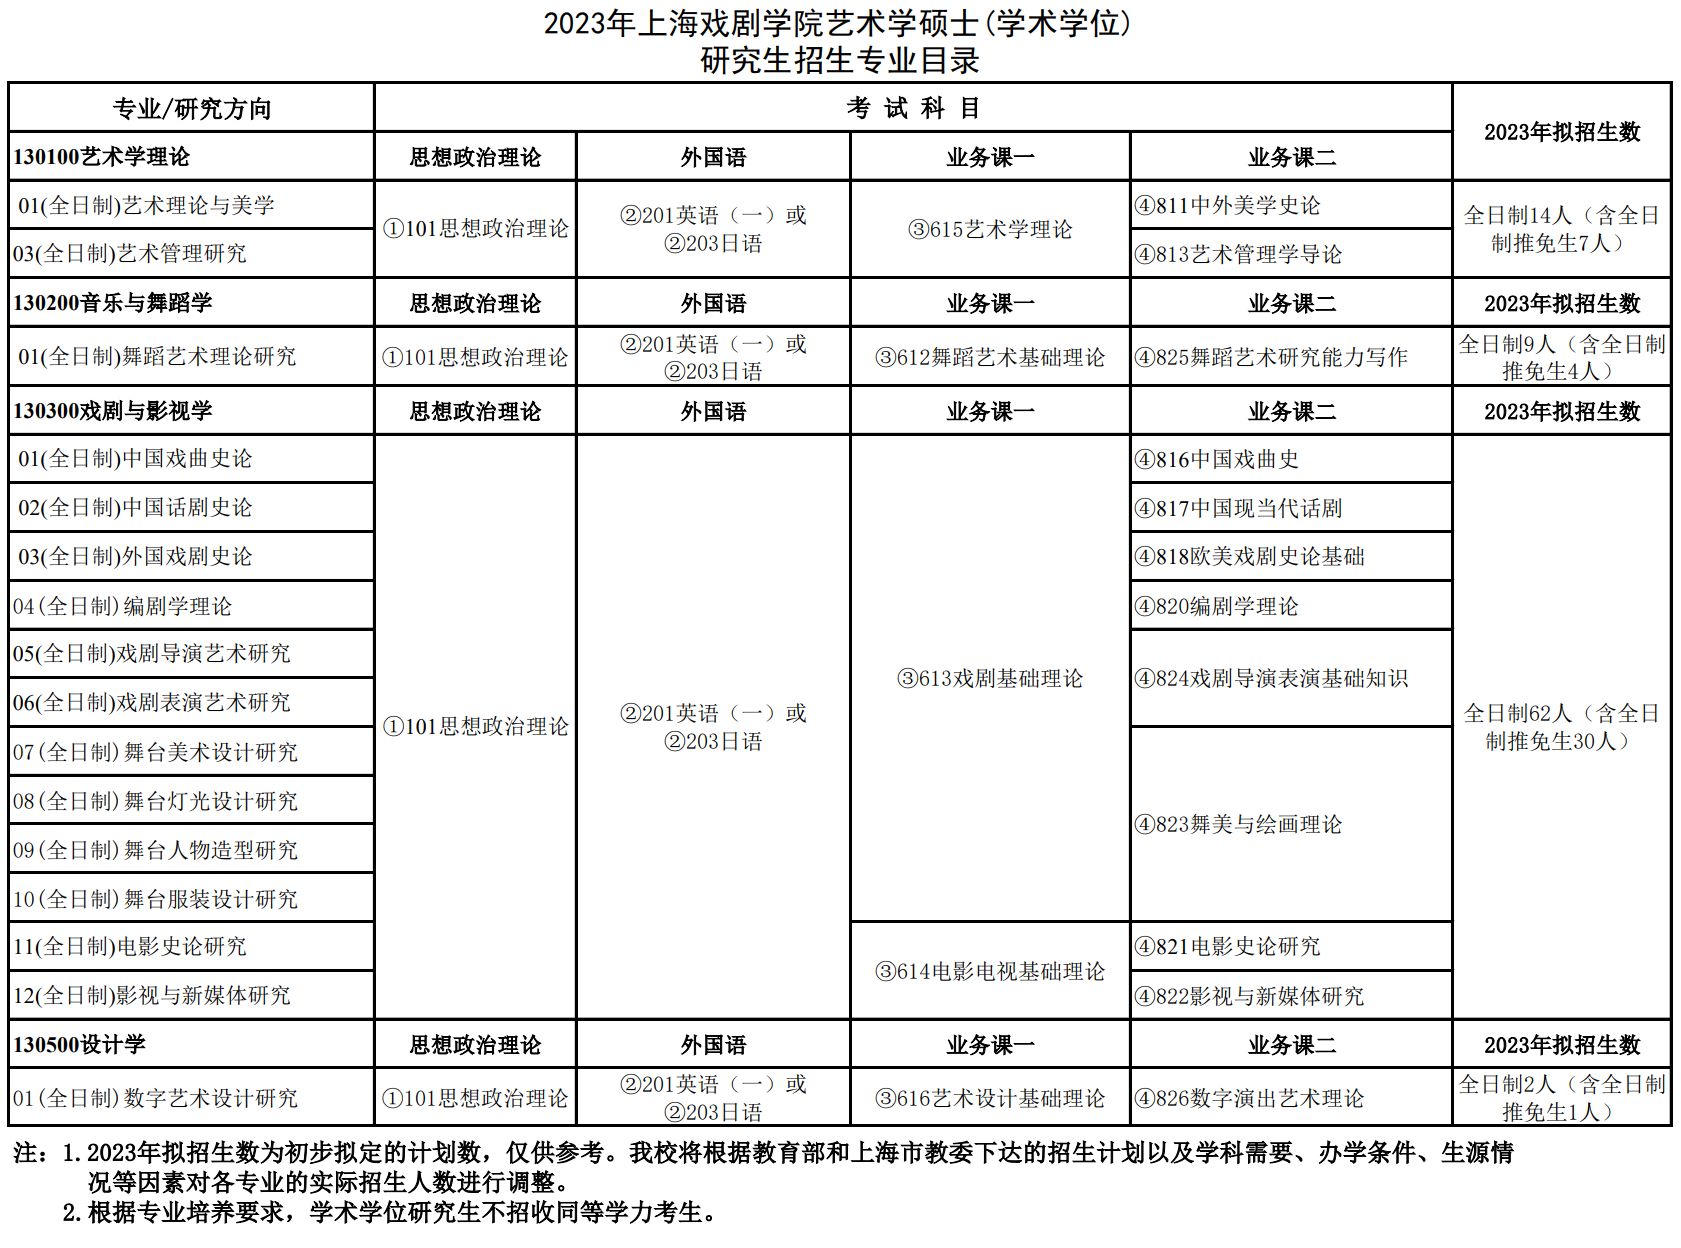 2023年上海戏剧学院舞蹈硕士学位研究生招生简章、招生专业目录、招生推荐资料及参考书目